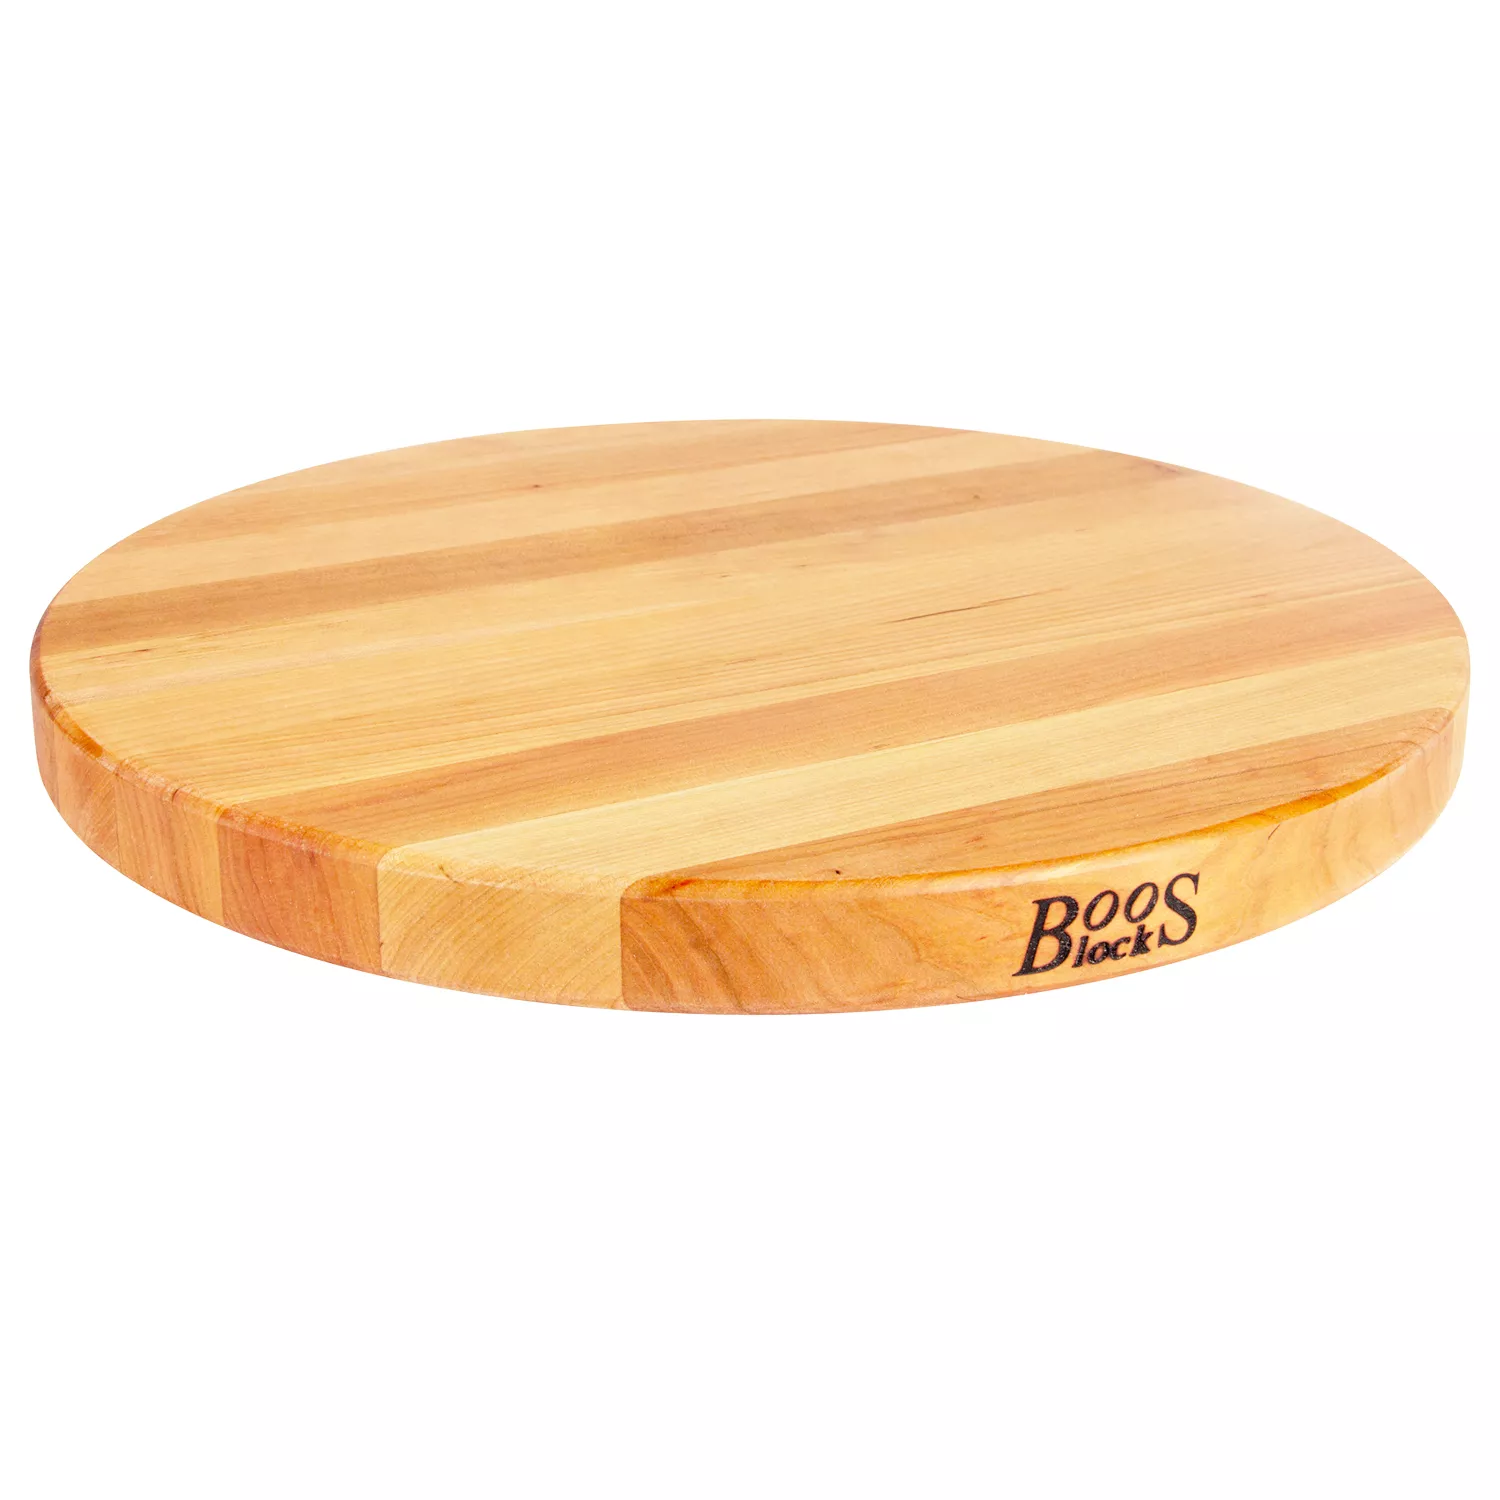 John Boos & Co. Edge-Grain Round Maple Cutting Board